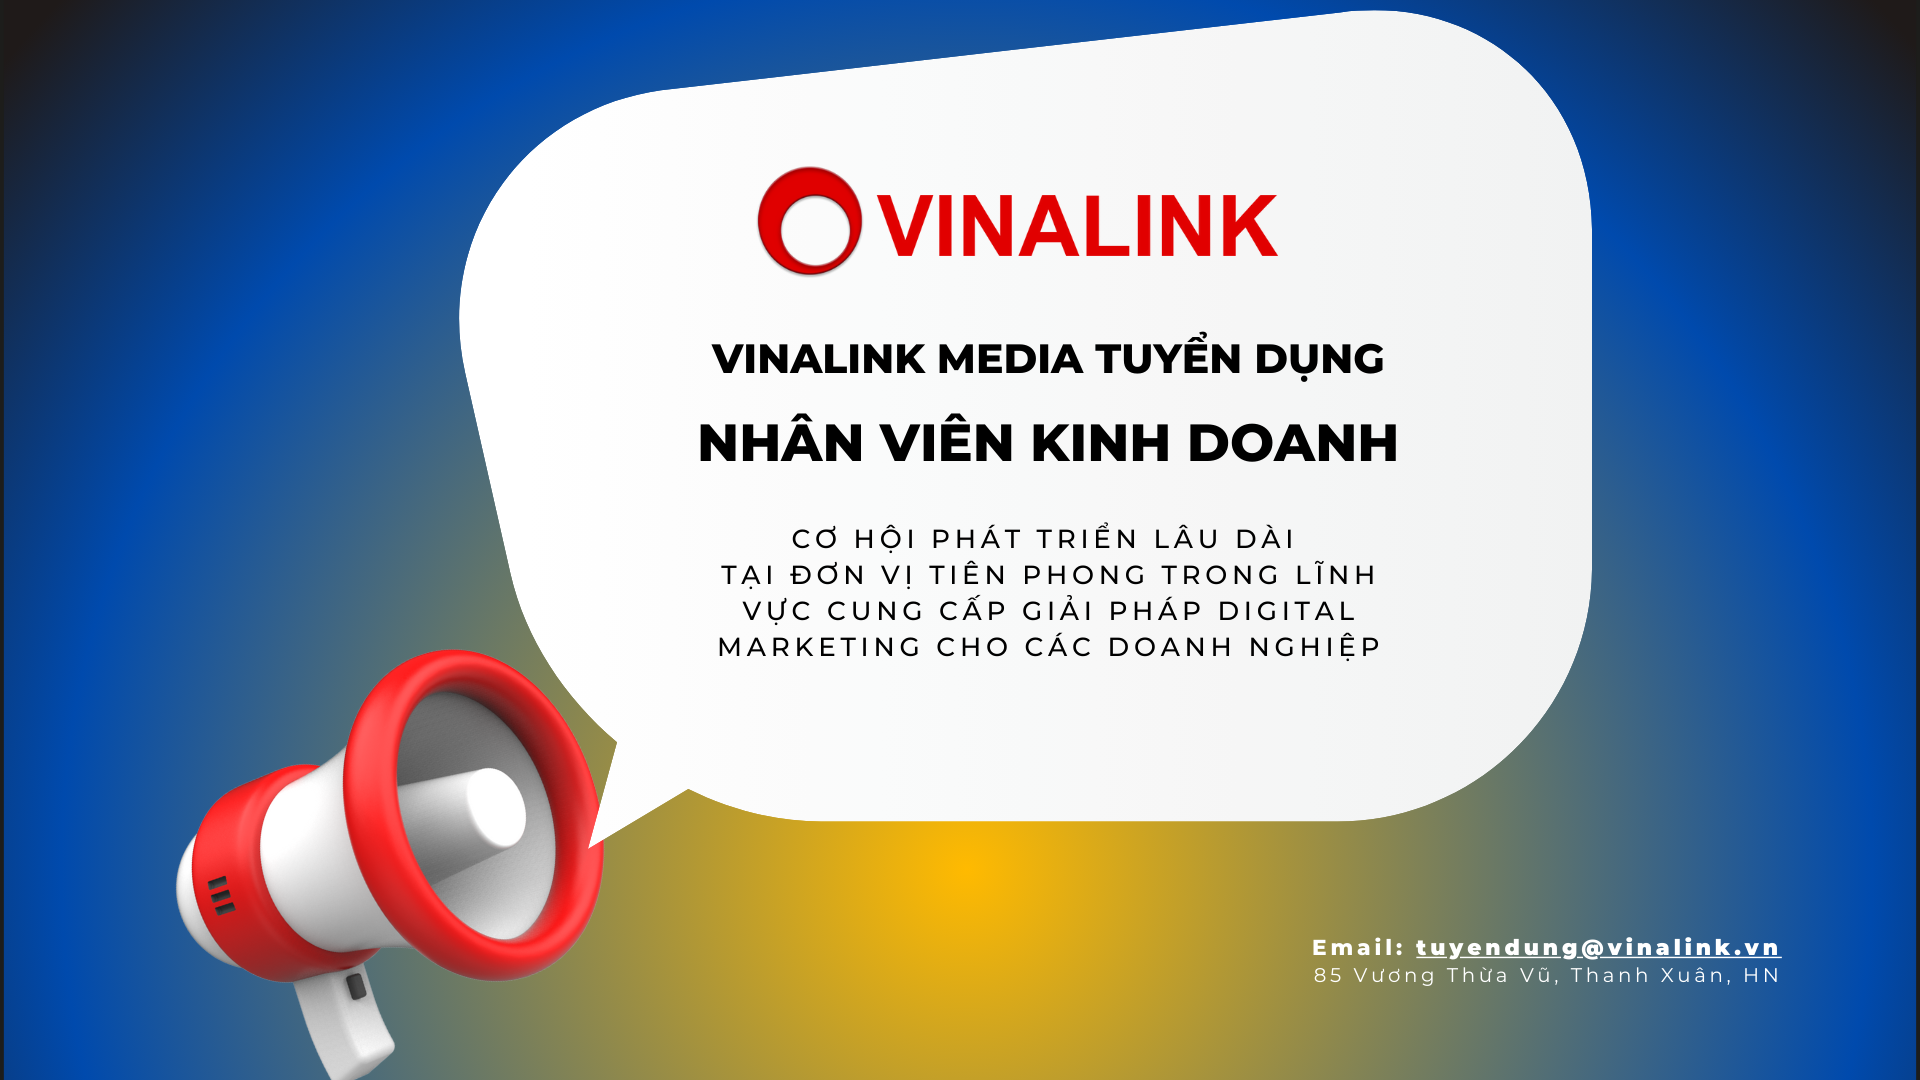 Tuyển dụng Vinalink Media